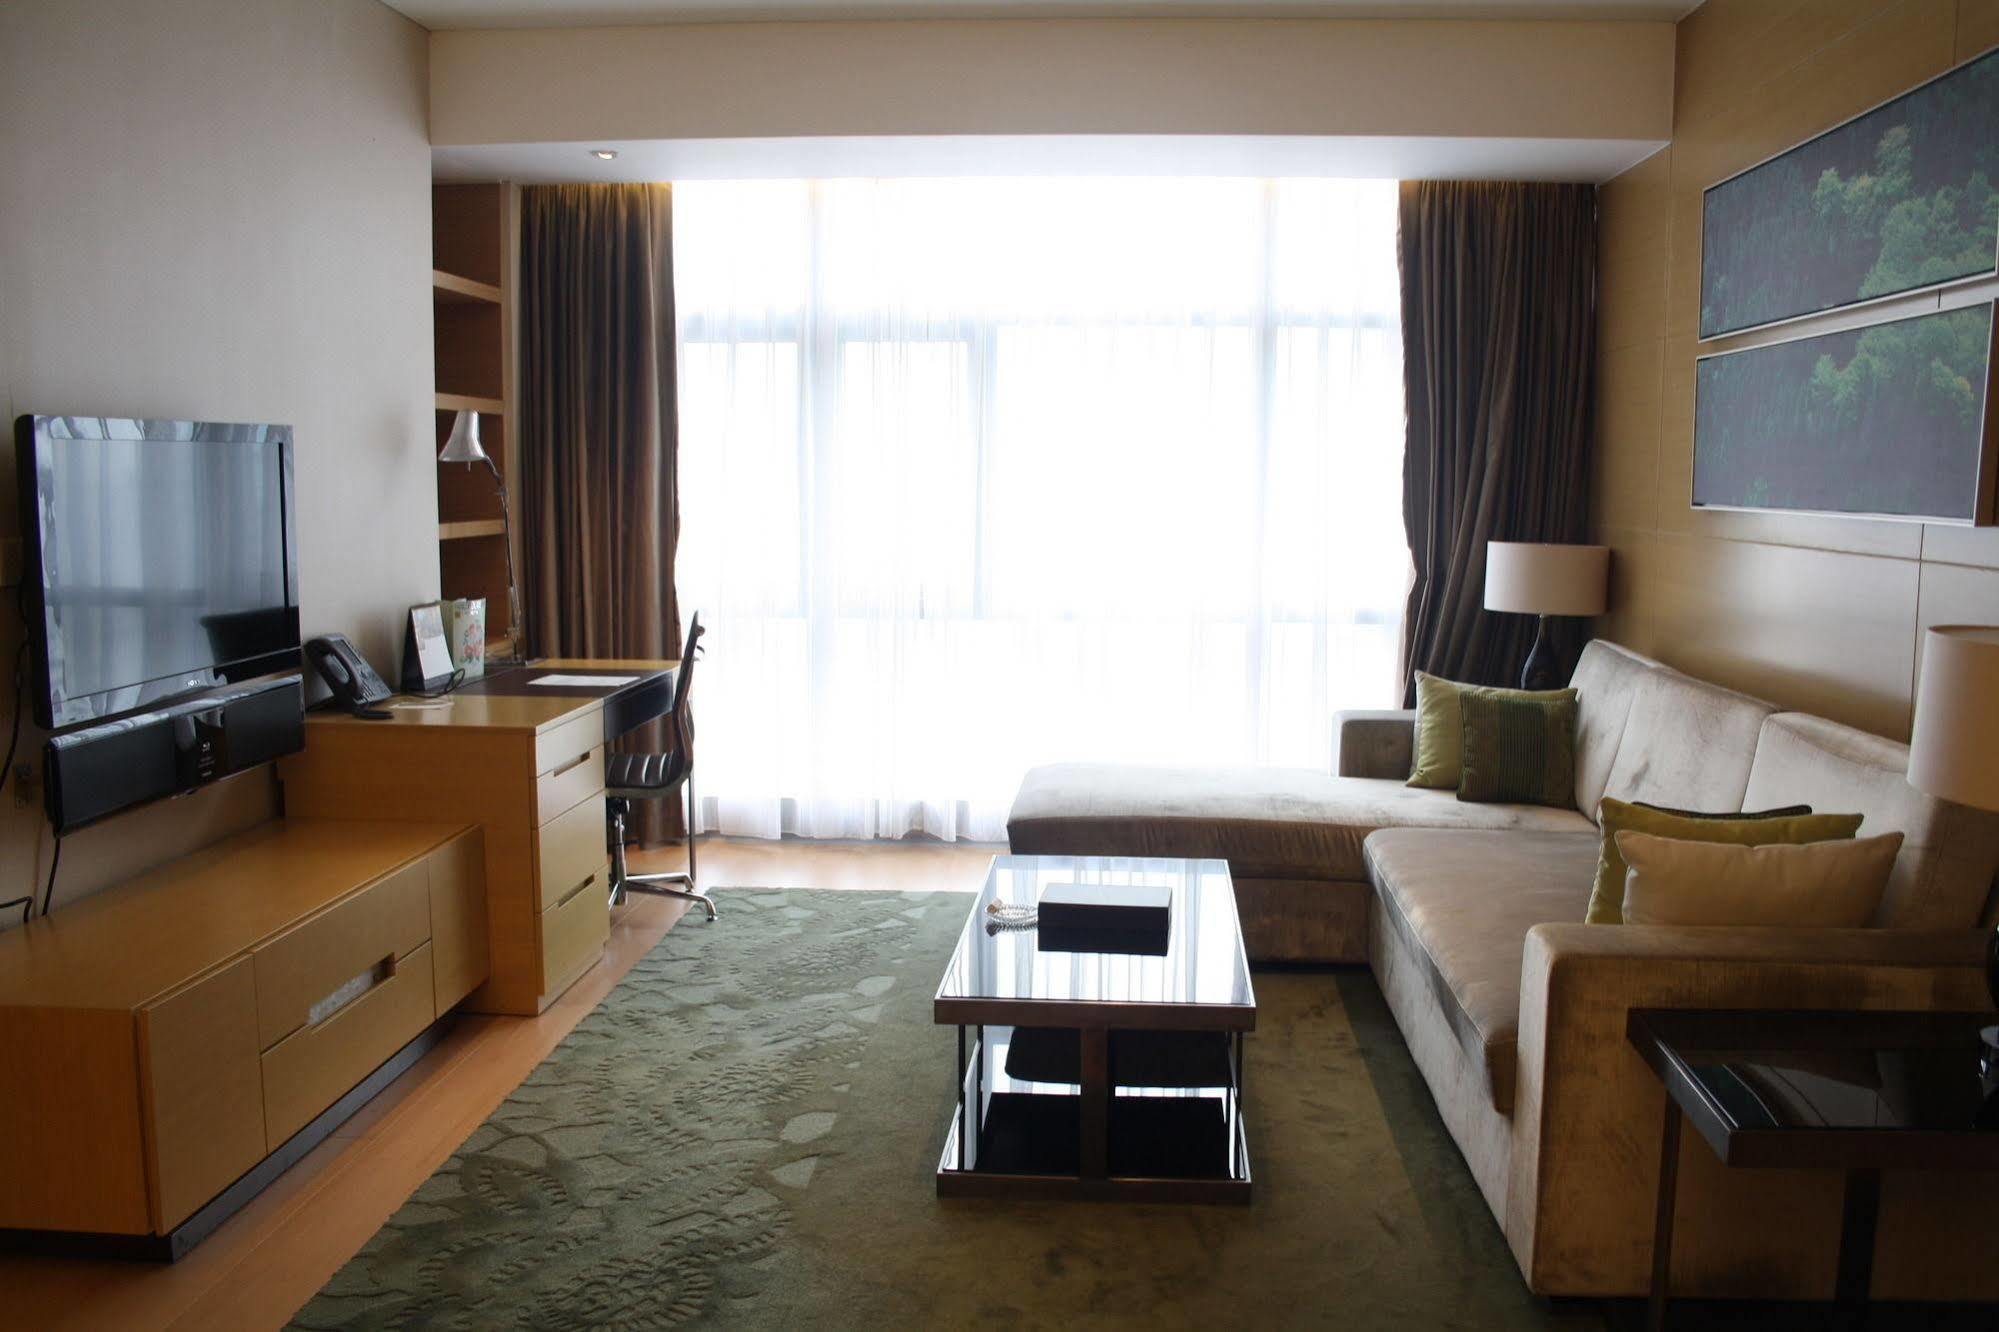 Grand Parcvue Hotel Residence Chengdu Zewnętrze zdjęcie